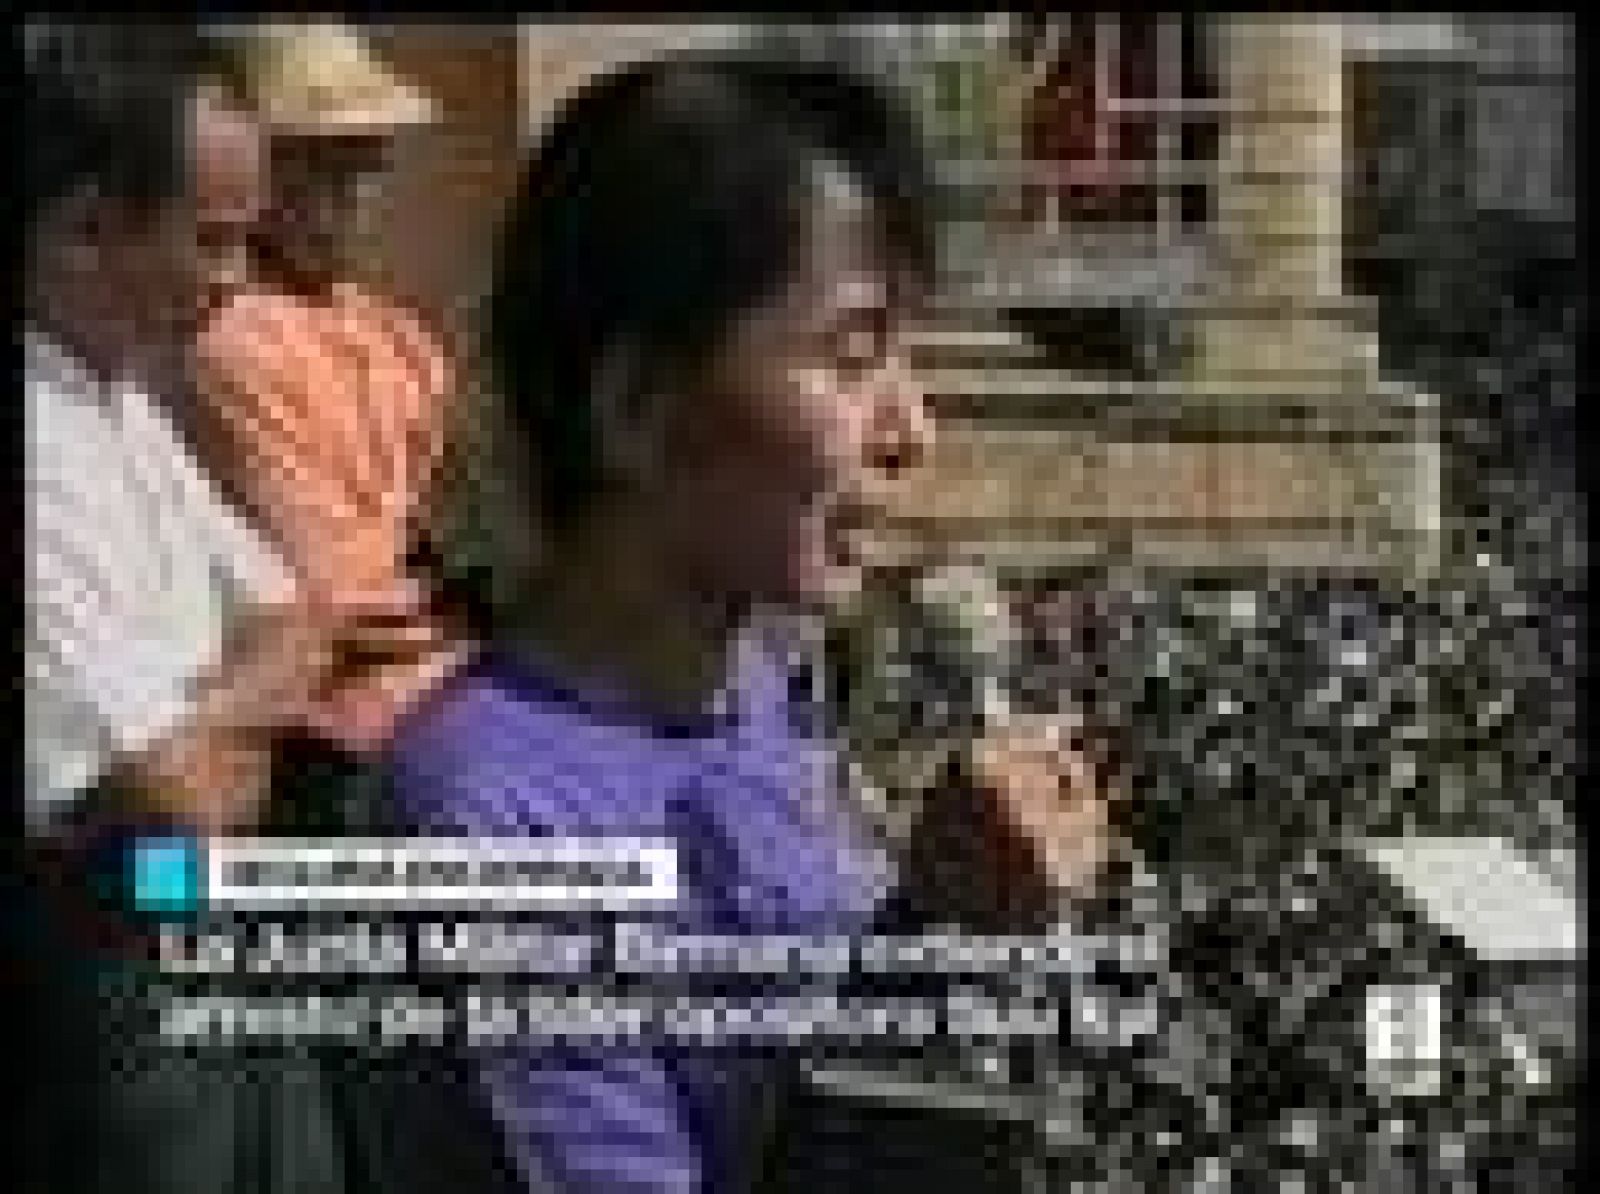   En Birmania, la dictadura militar ha prorrogado el arresto domiciliario de la líder opositora Aung San Suu Kyi.La premio Nobel de la Paz fue detenida por última vez en mayo del 2003. Desde que regresó al país en el 88 ha estado recluida en su domicilio de forma prácticamente ininterrumpida. Actualmente está incomunicada, sin teléfono ni internet.